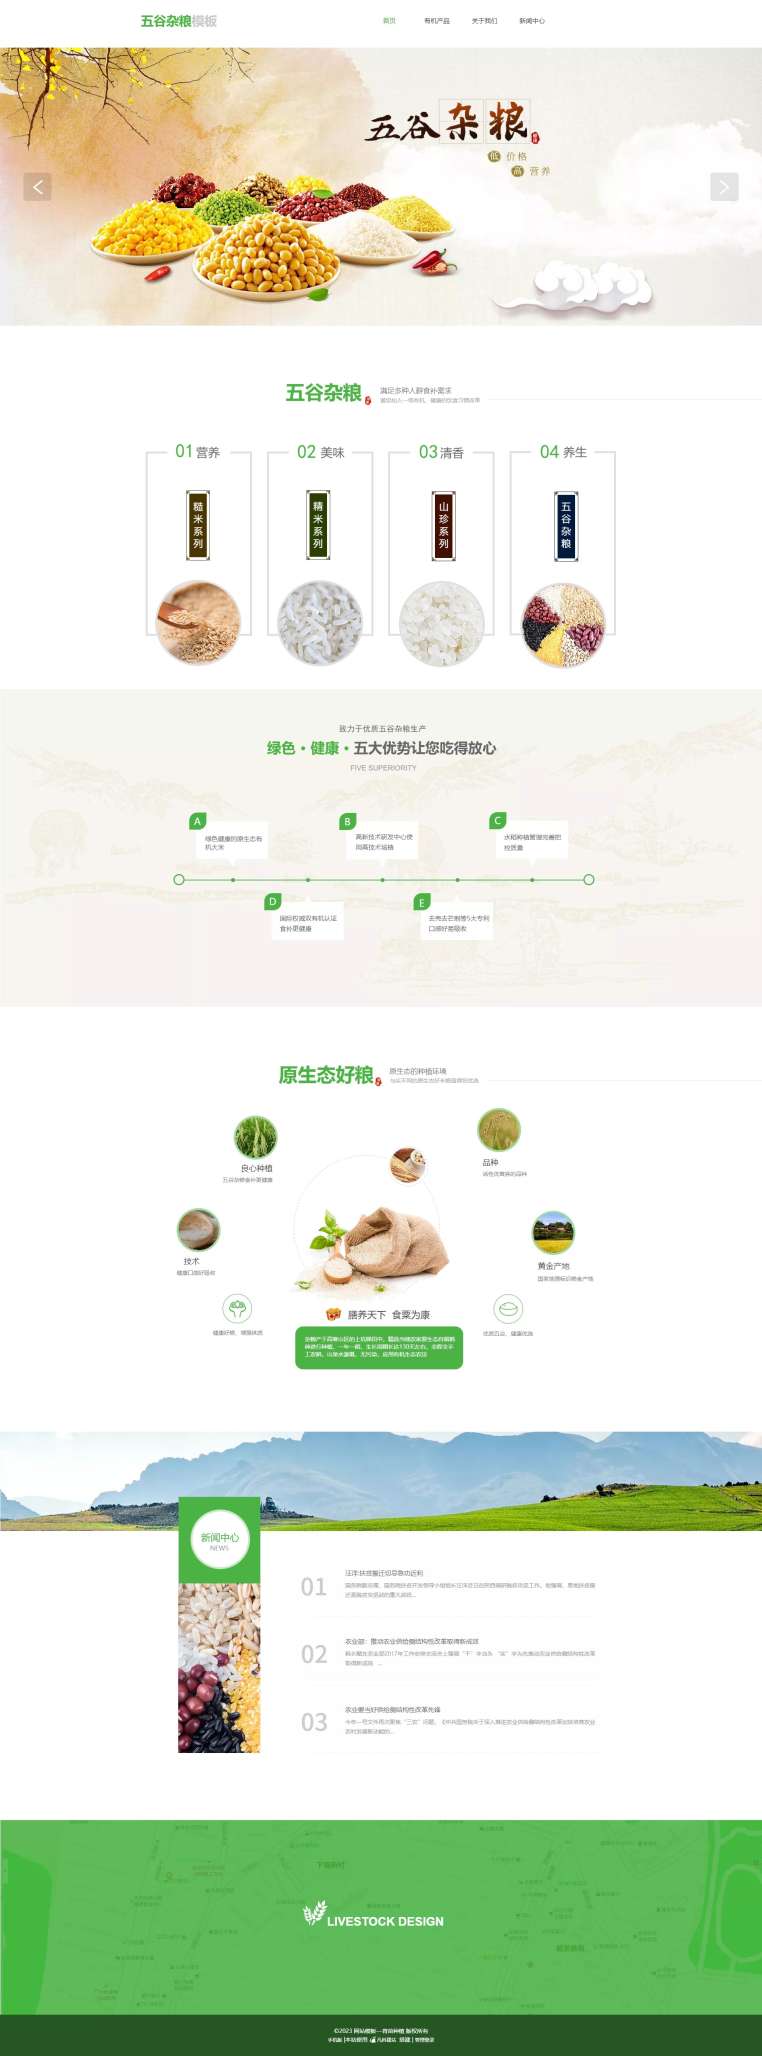 优选五谷杂粮种植农副产品网站模板